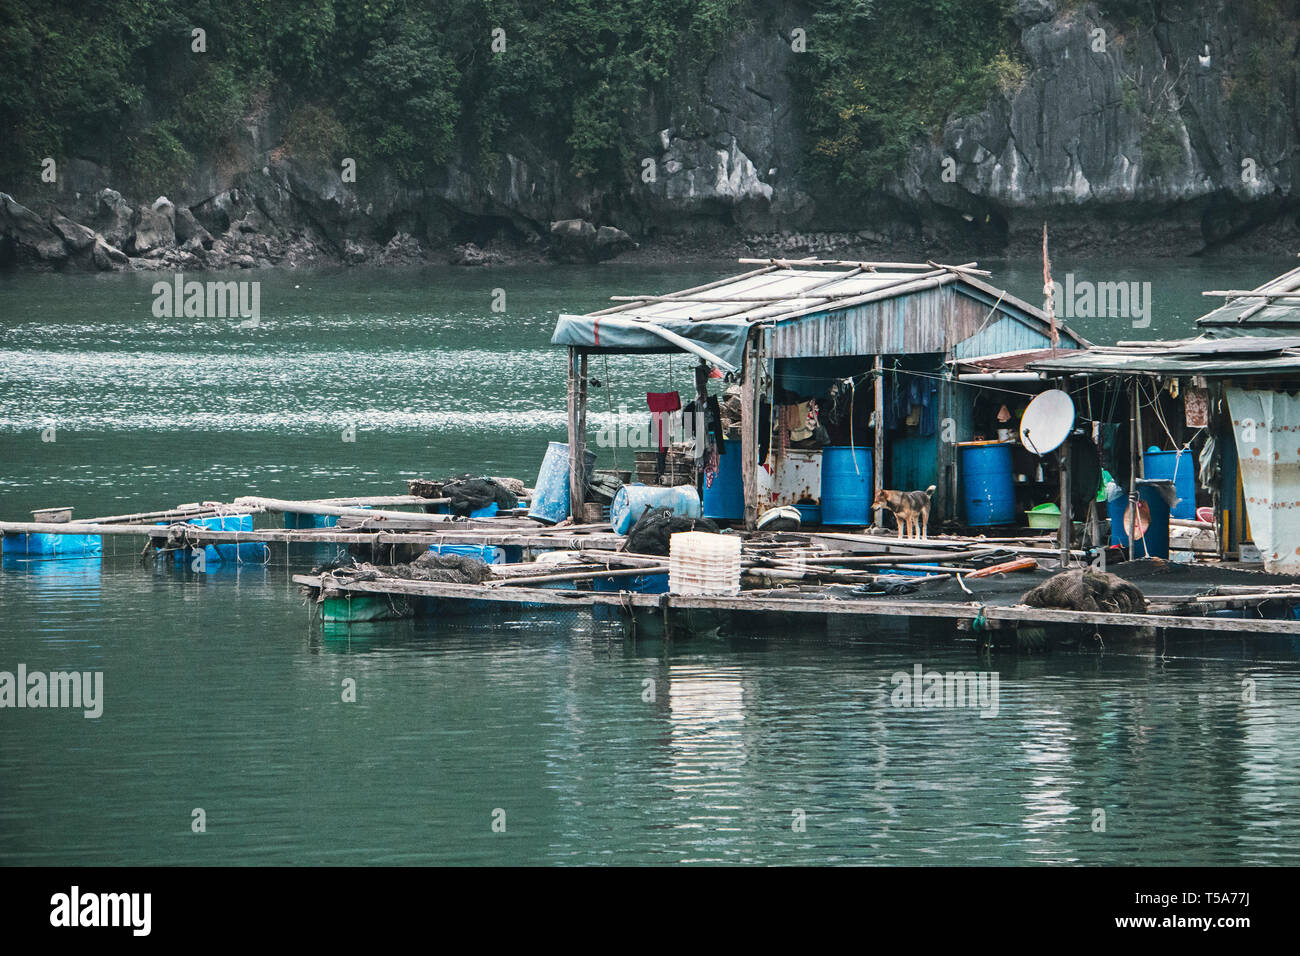 Pisciculture flottante dans la baie de Ha Long vietnam. production de poissons et crustacés dans la mer. Banque D'Images